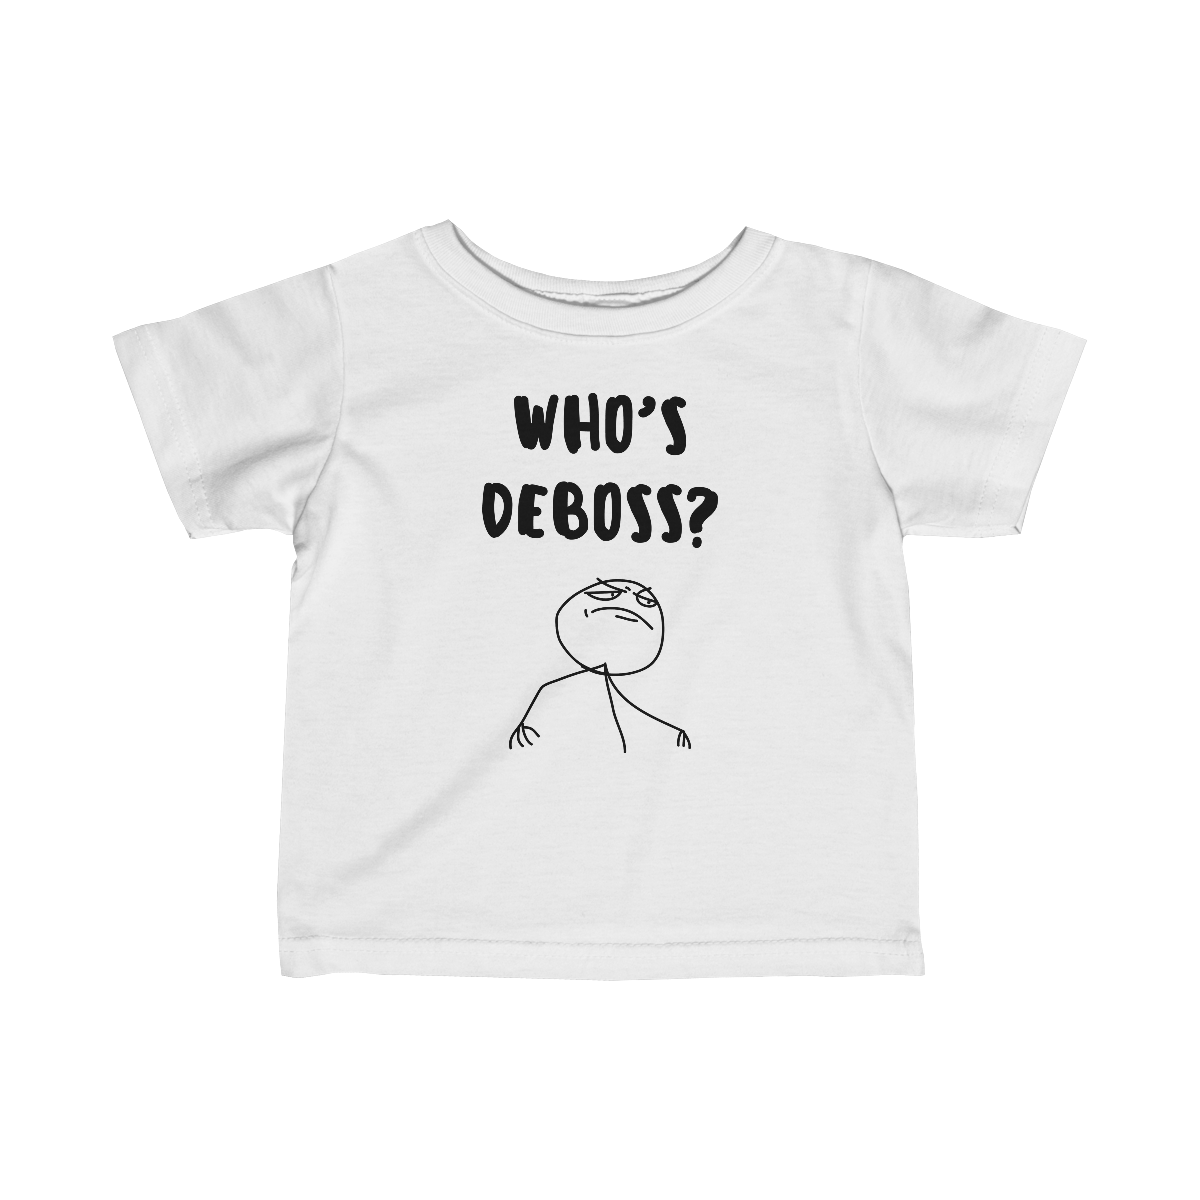 Who's Deboss? T-Shirt (Infant)